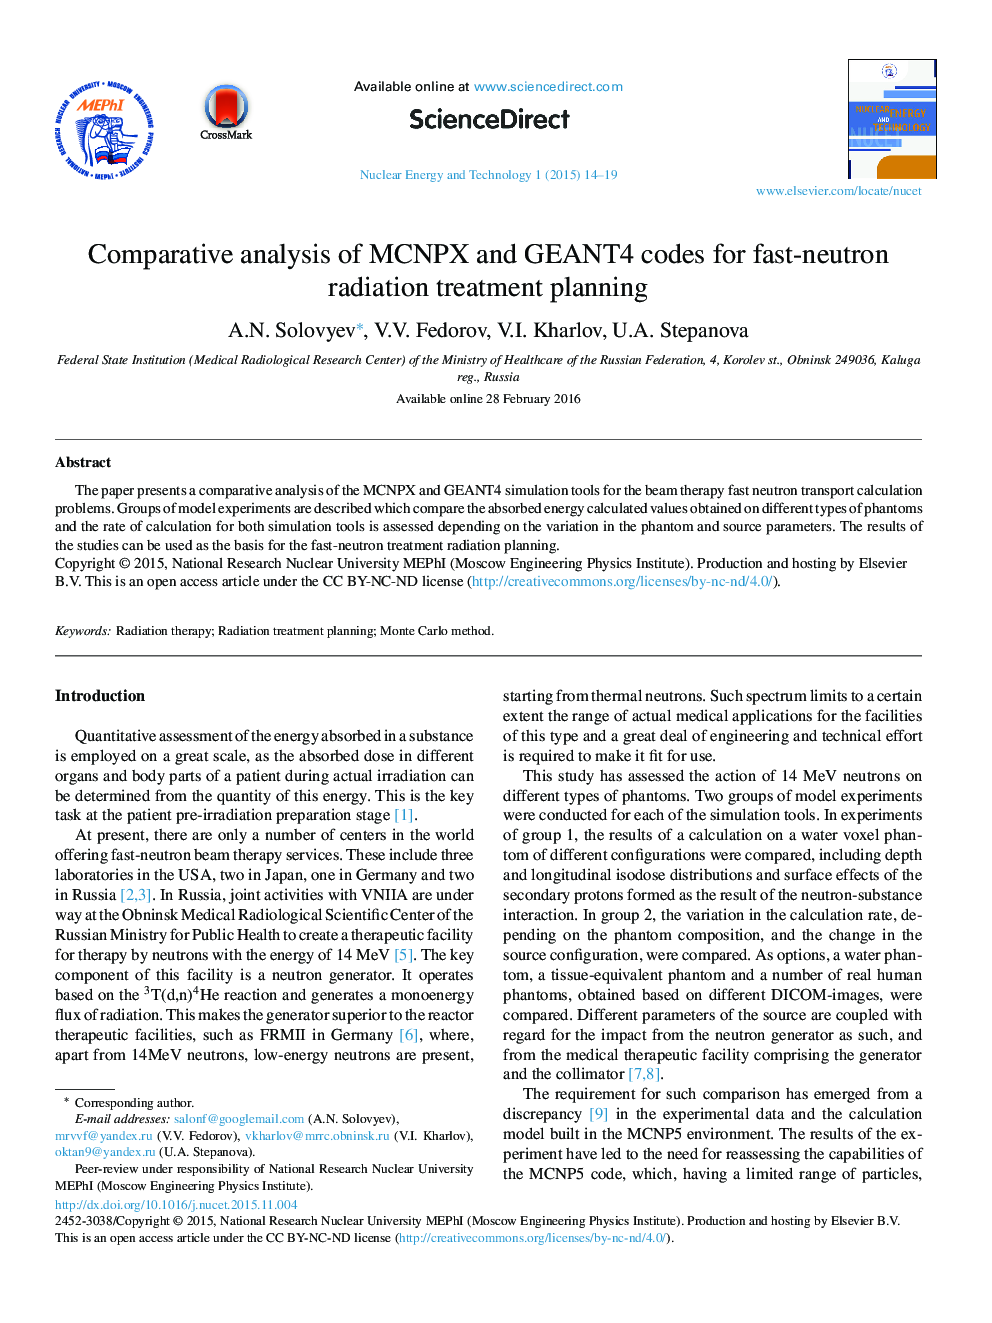 تجزیه و تحلیل مقایسه ای از کدهای MCNPX و GEANT4 برای نوترون سریع برنامه ریزی پرتو درمانی